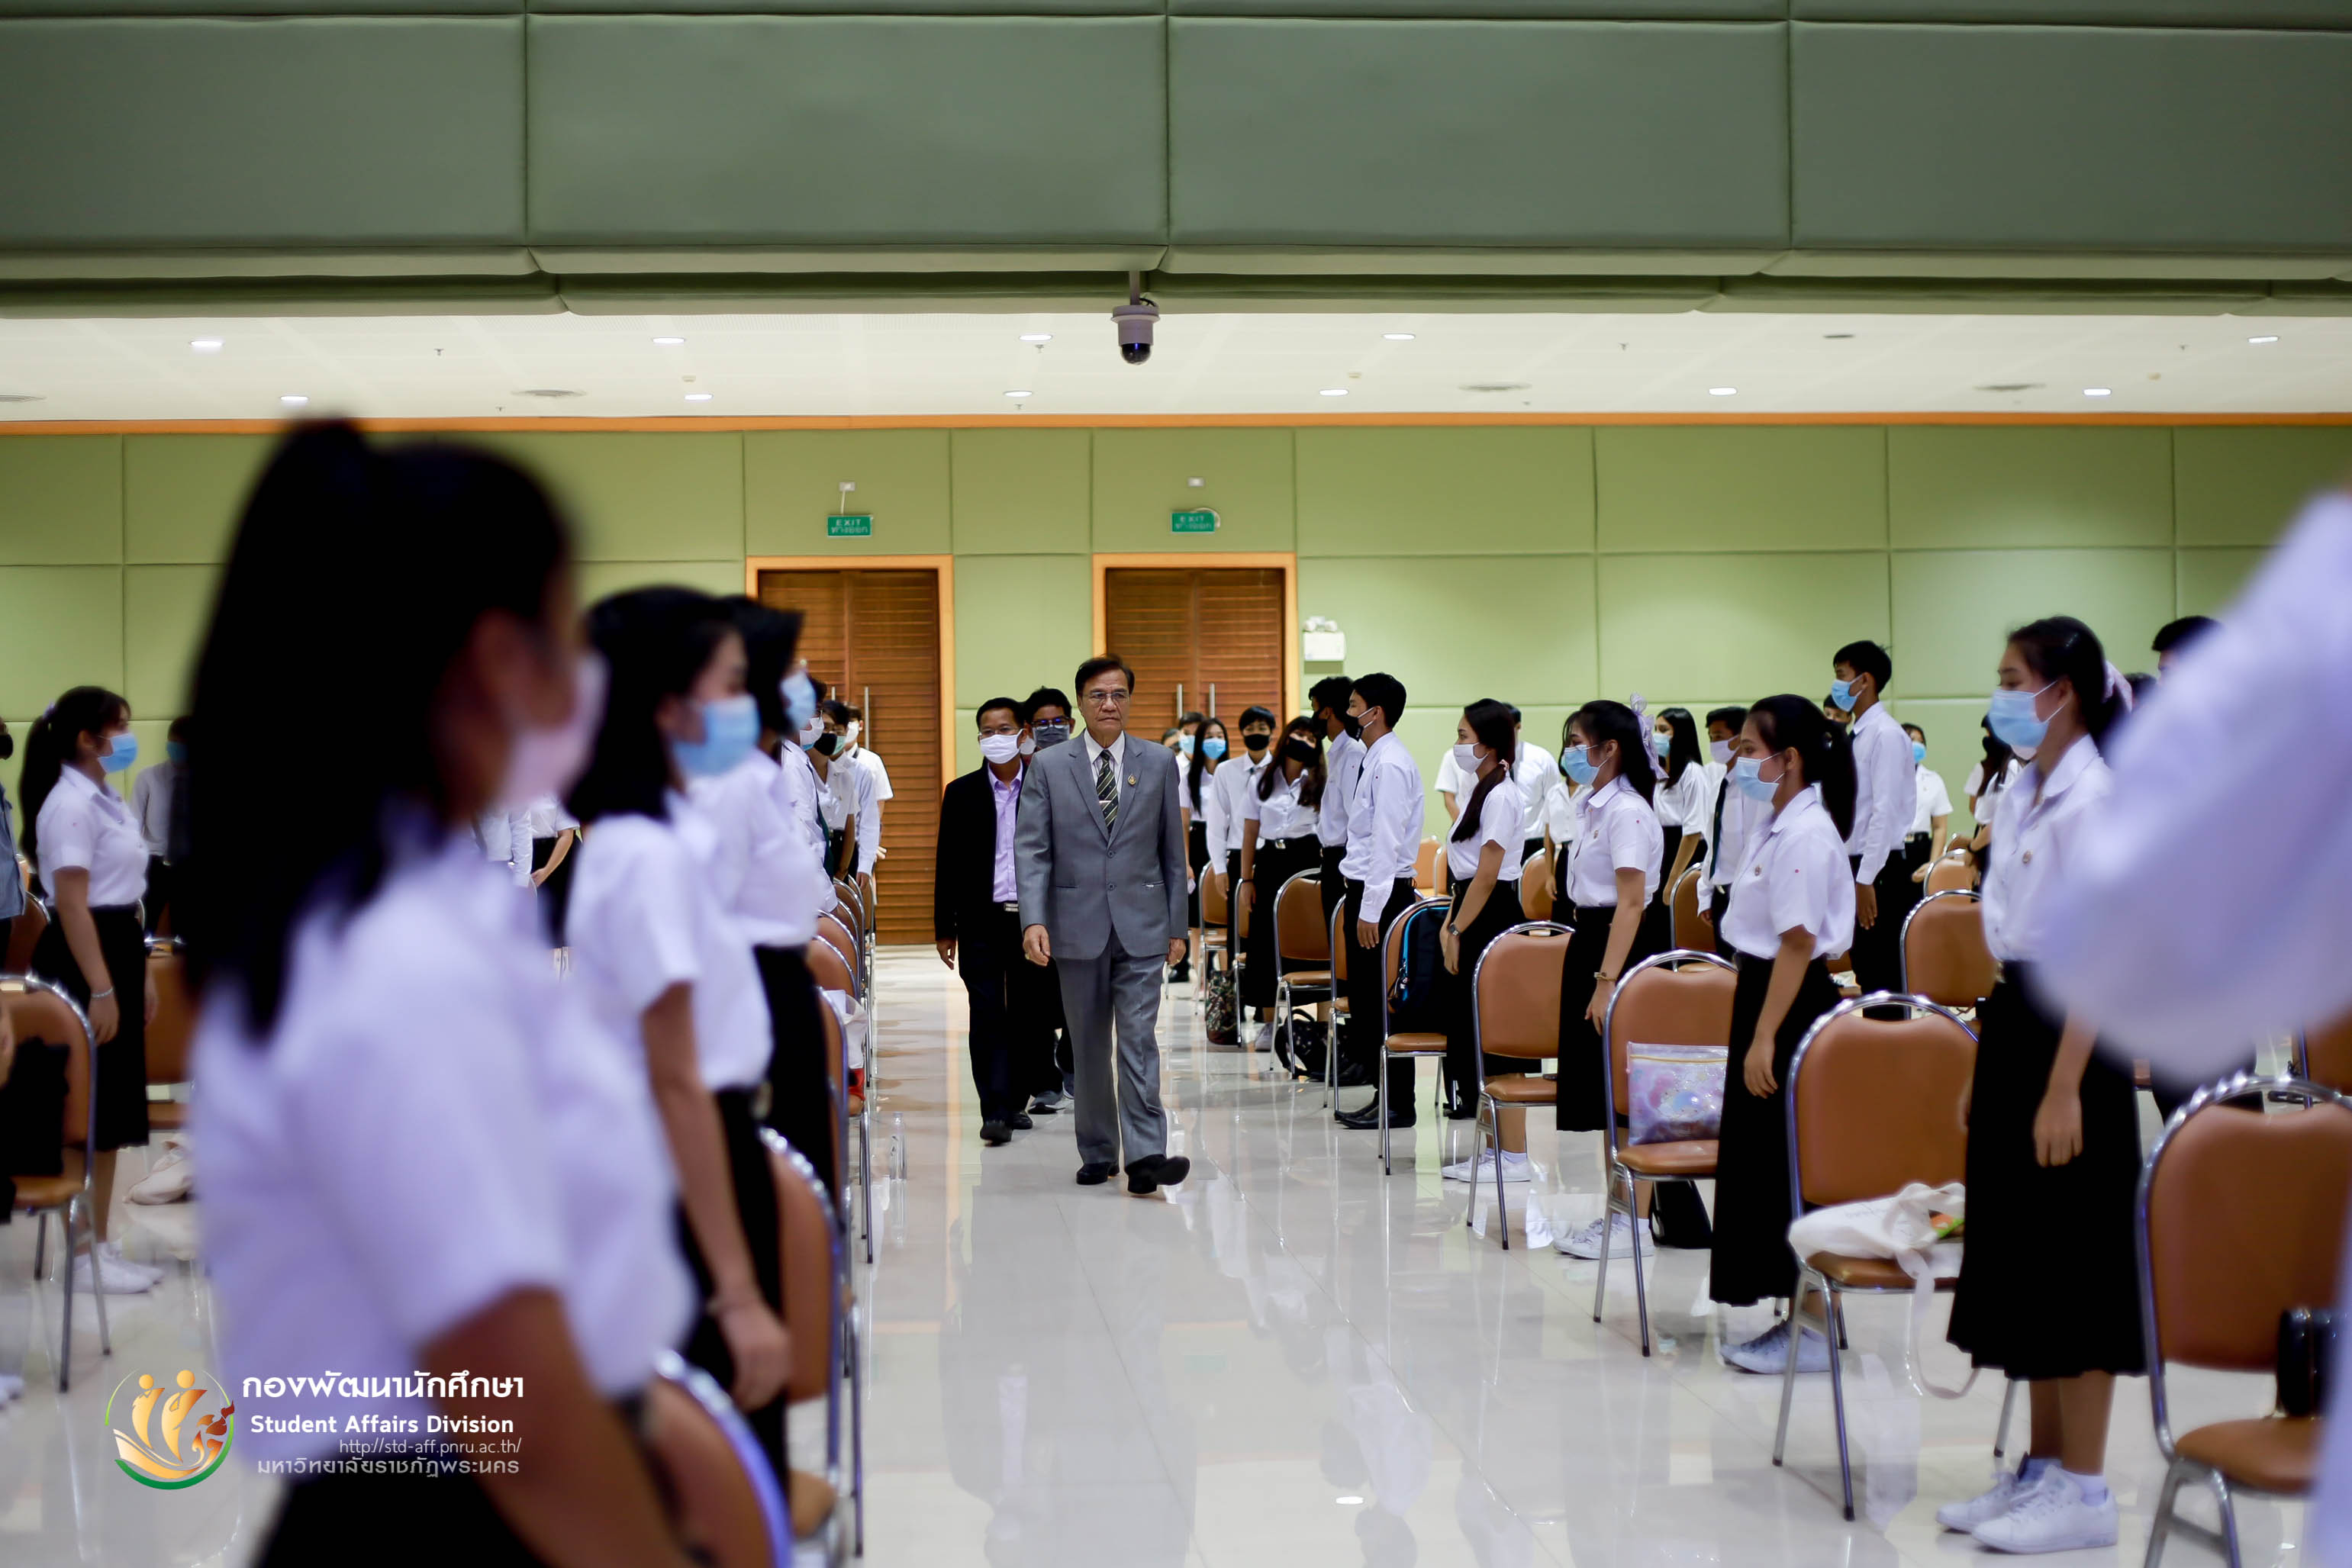 5 สิงหาคม 2563 กองพัฒนานักศึกษา มหาวิทยาลัยราชภัฏพระนคร จัดให้มีการจัดกิจกรรมเพาะกล้ากาซะลอง 63 รุ่นที่ 5 ประจำปีการศึกษา 2563 ณ หอประชุมภัทรมหาราช